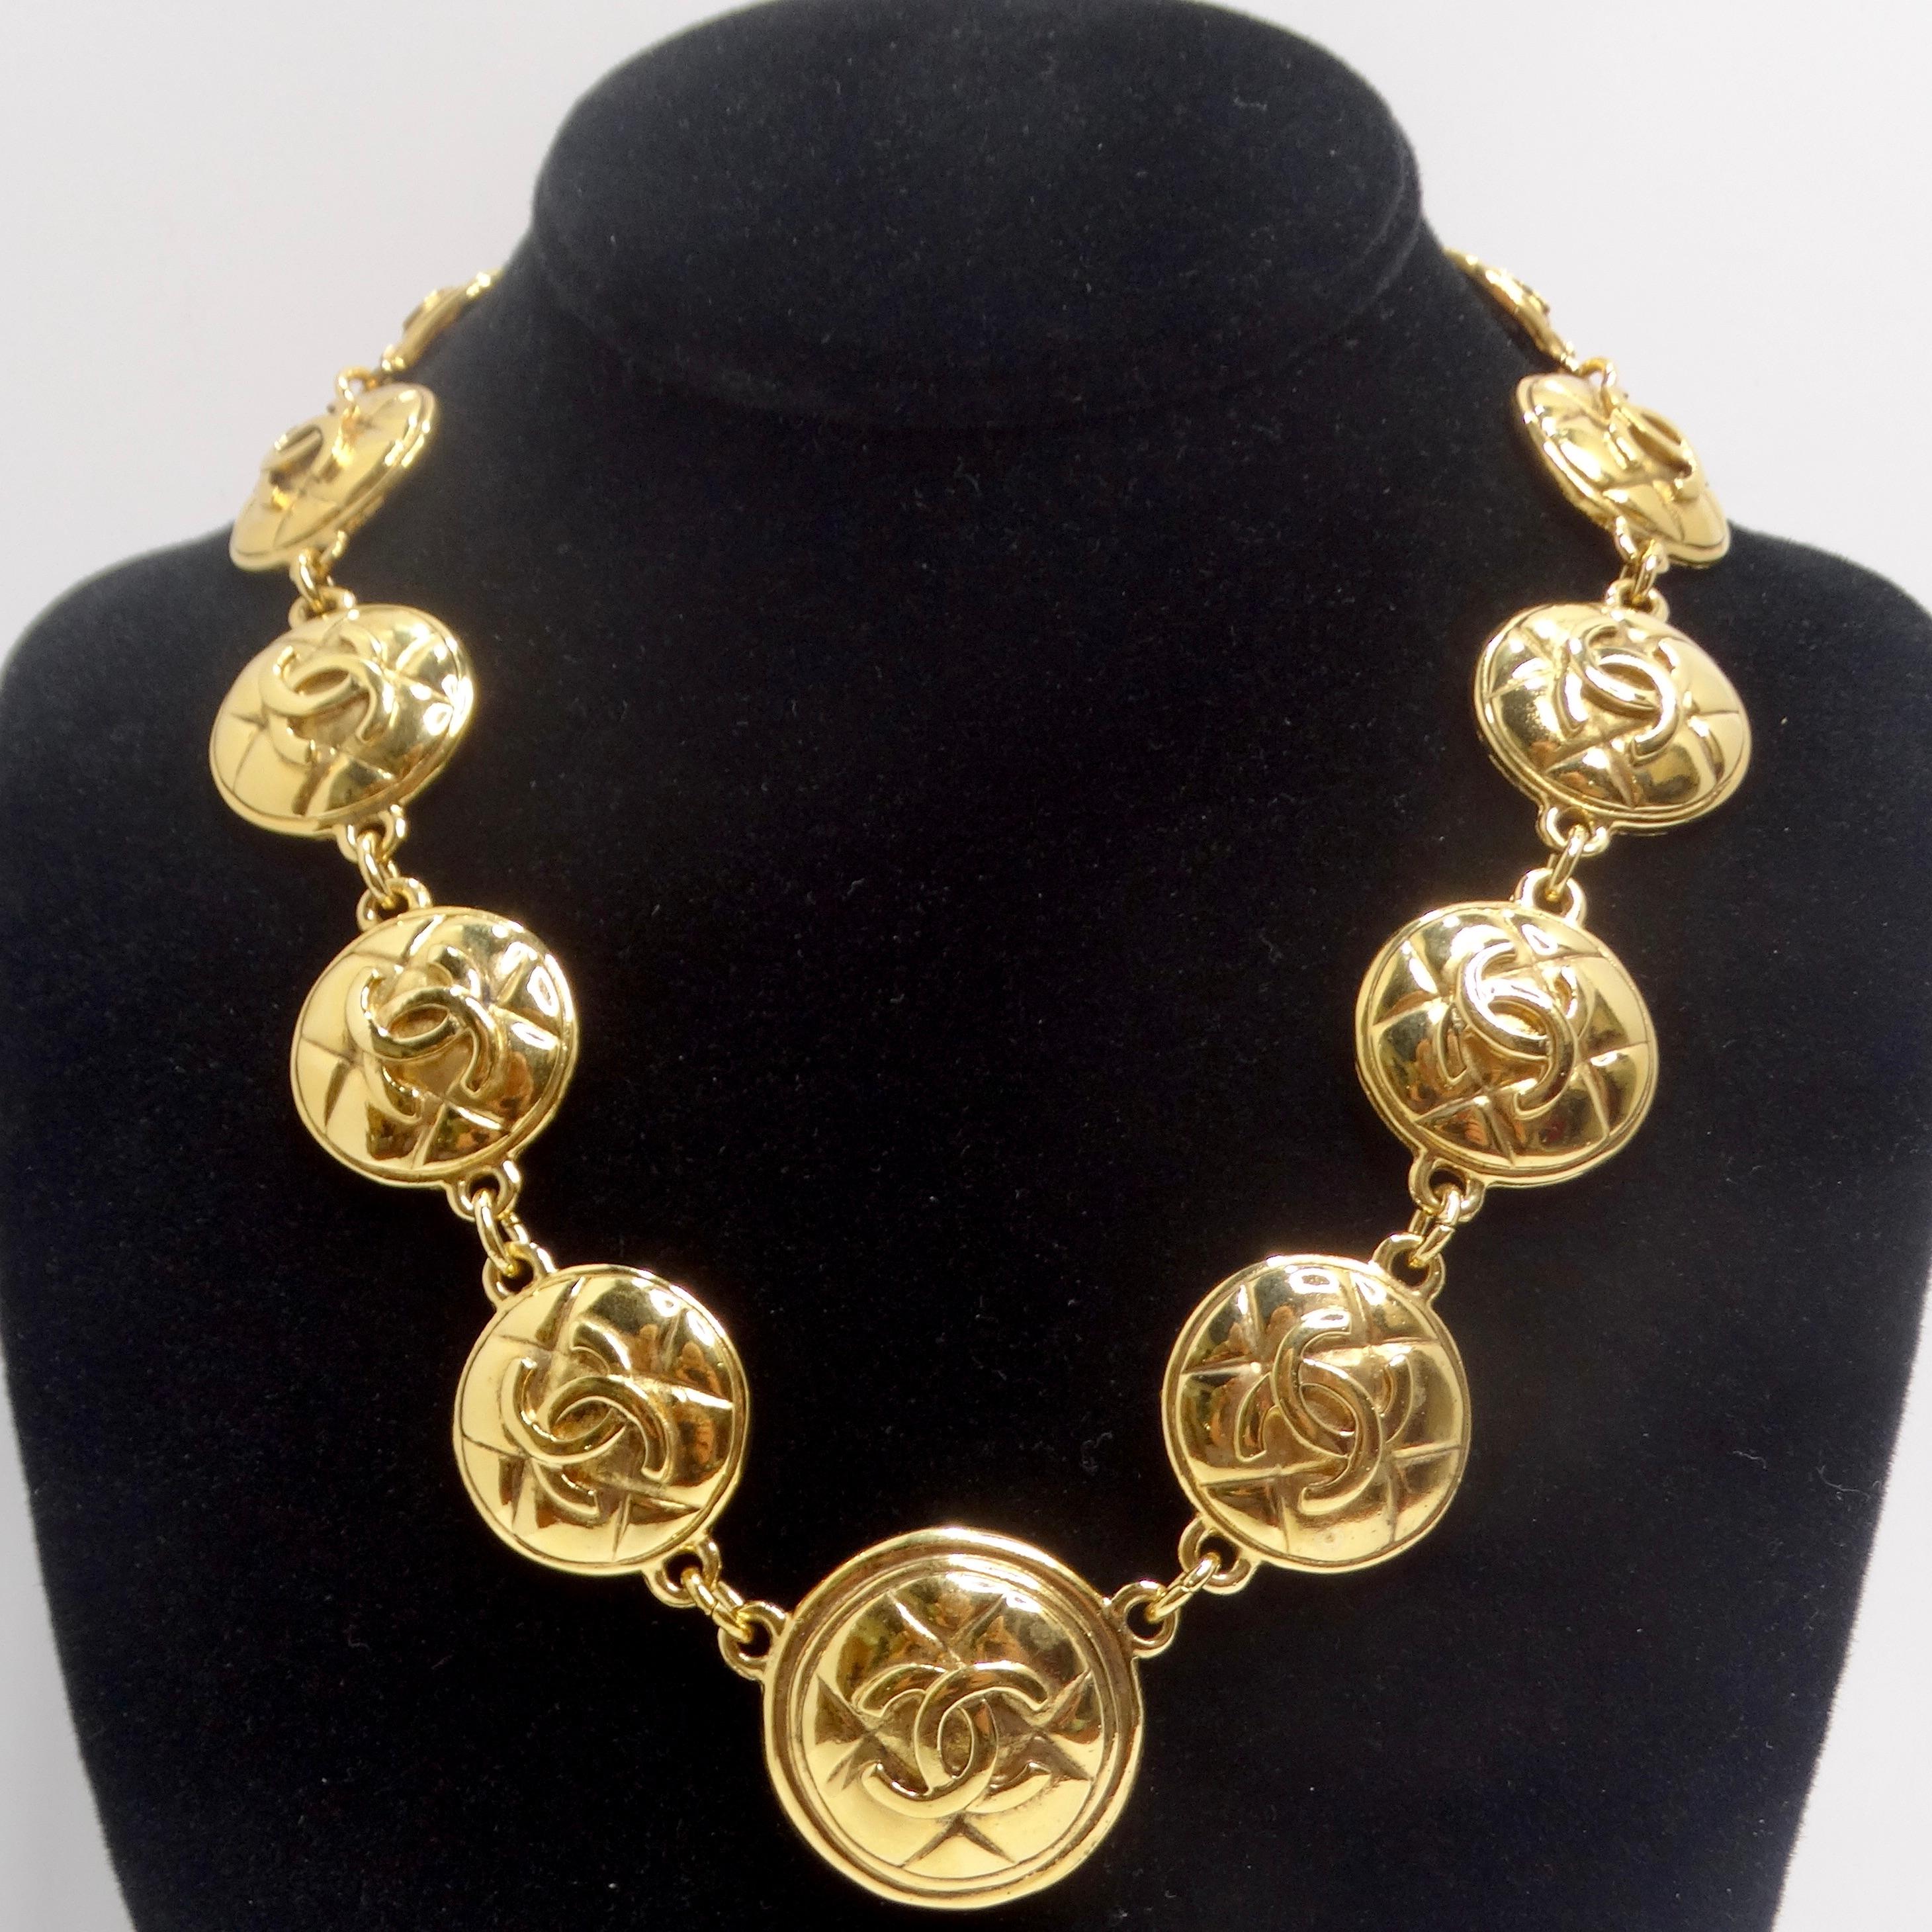 Voici le collier à médaillon matelassé avec logo Chanel des années 1980, un collier classique à maillons plaqué or jaune qui incarne le glamour vintage. Ce collier intemporel et glamour est composé de charms ronds plaqués or, chacun arborant le